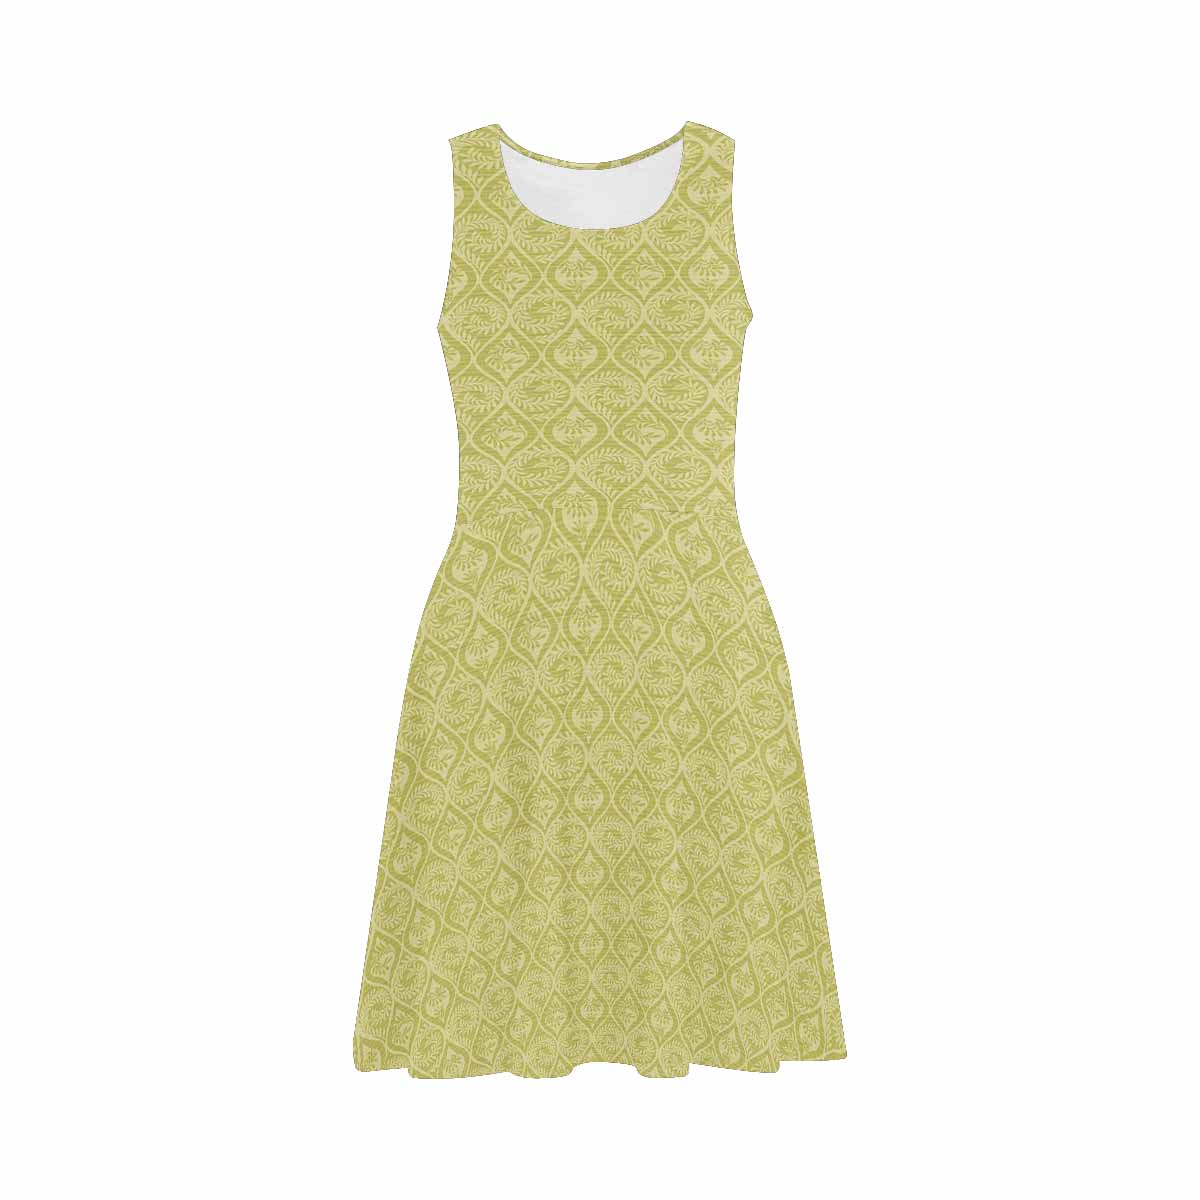 Antique General summer dress, MODEL 09534, design 01